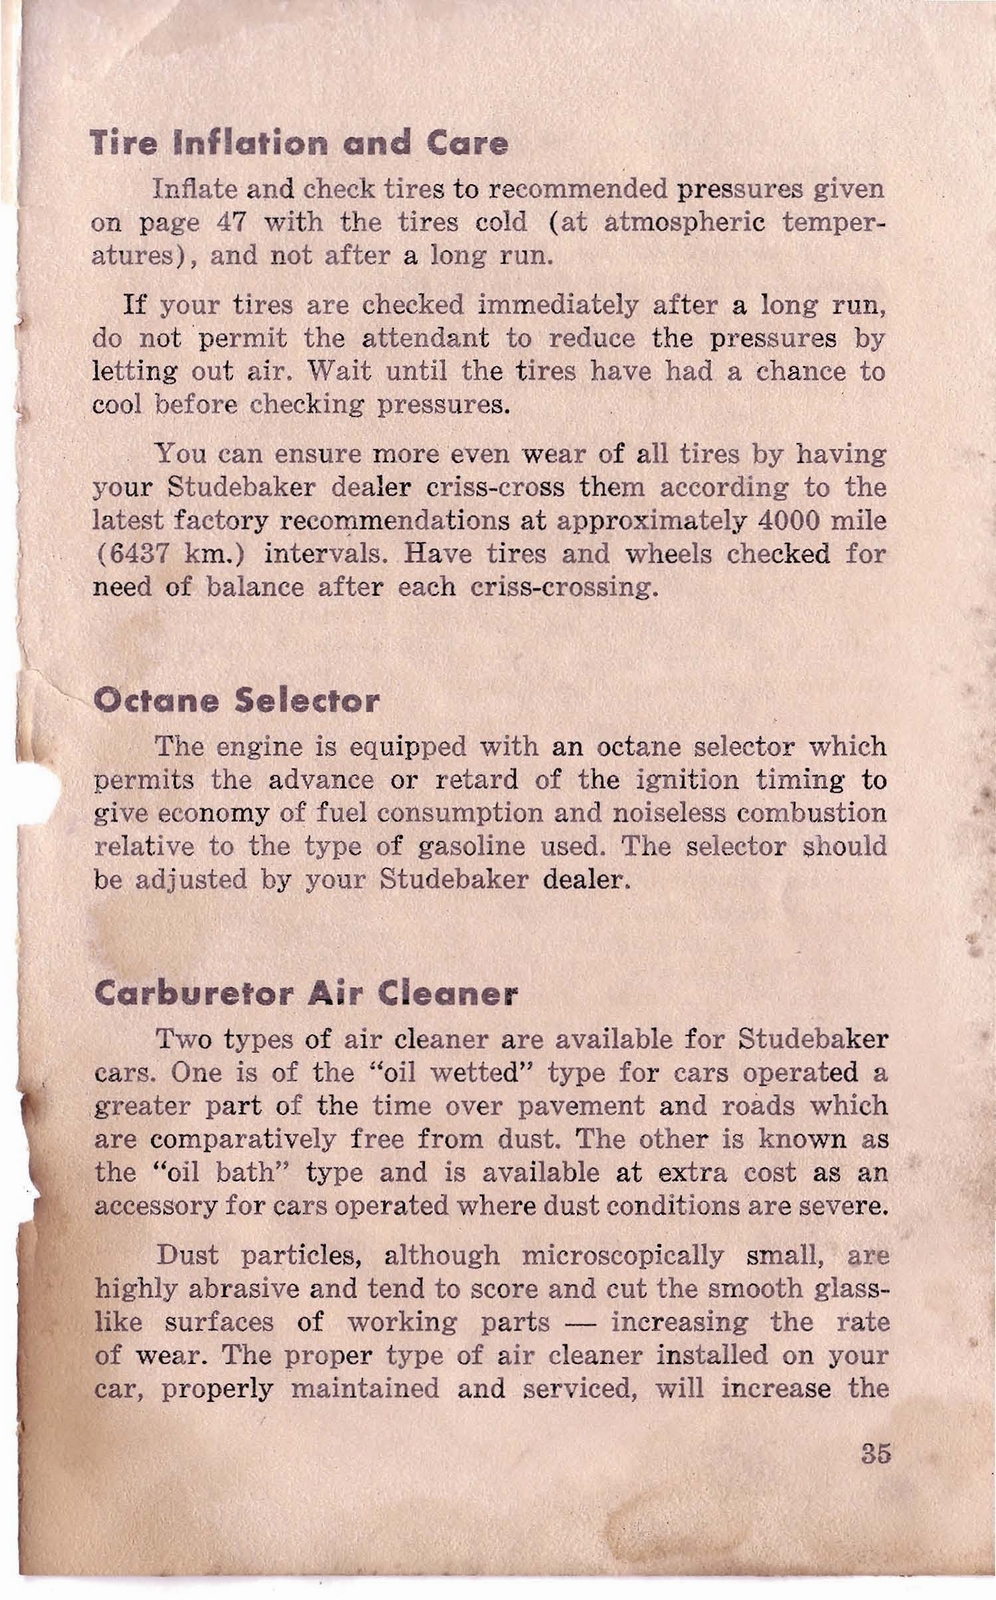 n_1950 Studebaker Commander Owners Guide-36.jpg